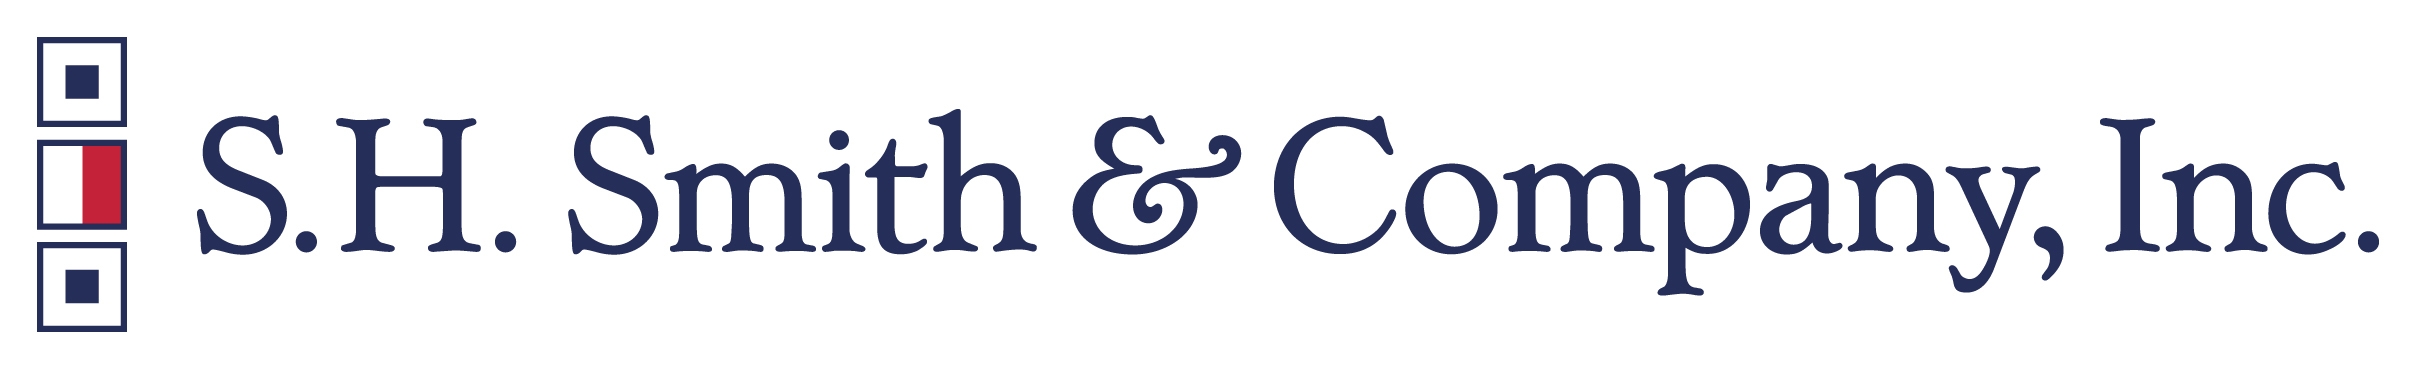 S.H. Smith & Company, Inc. Company Logo